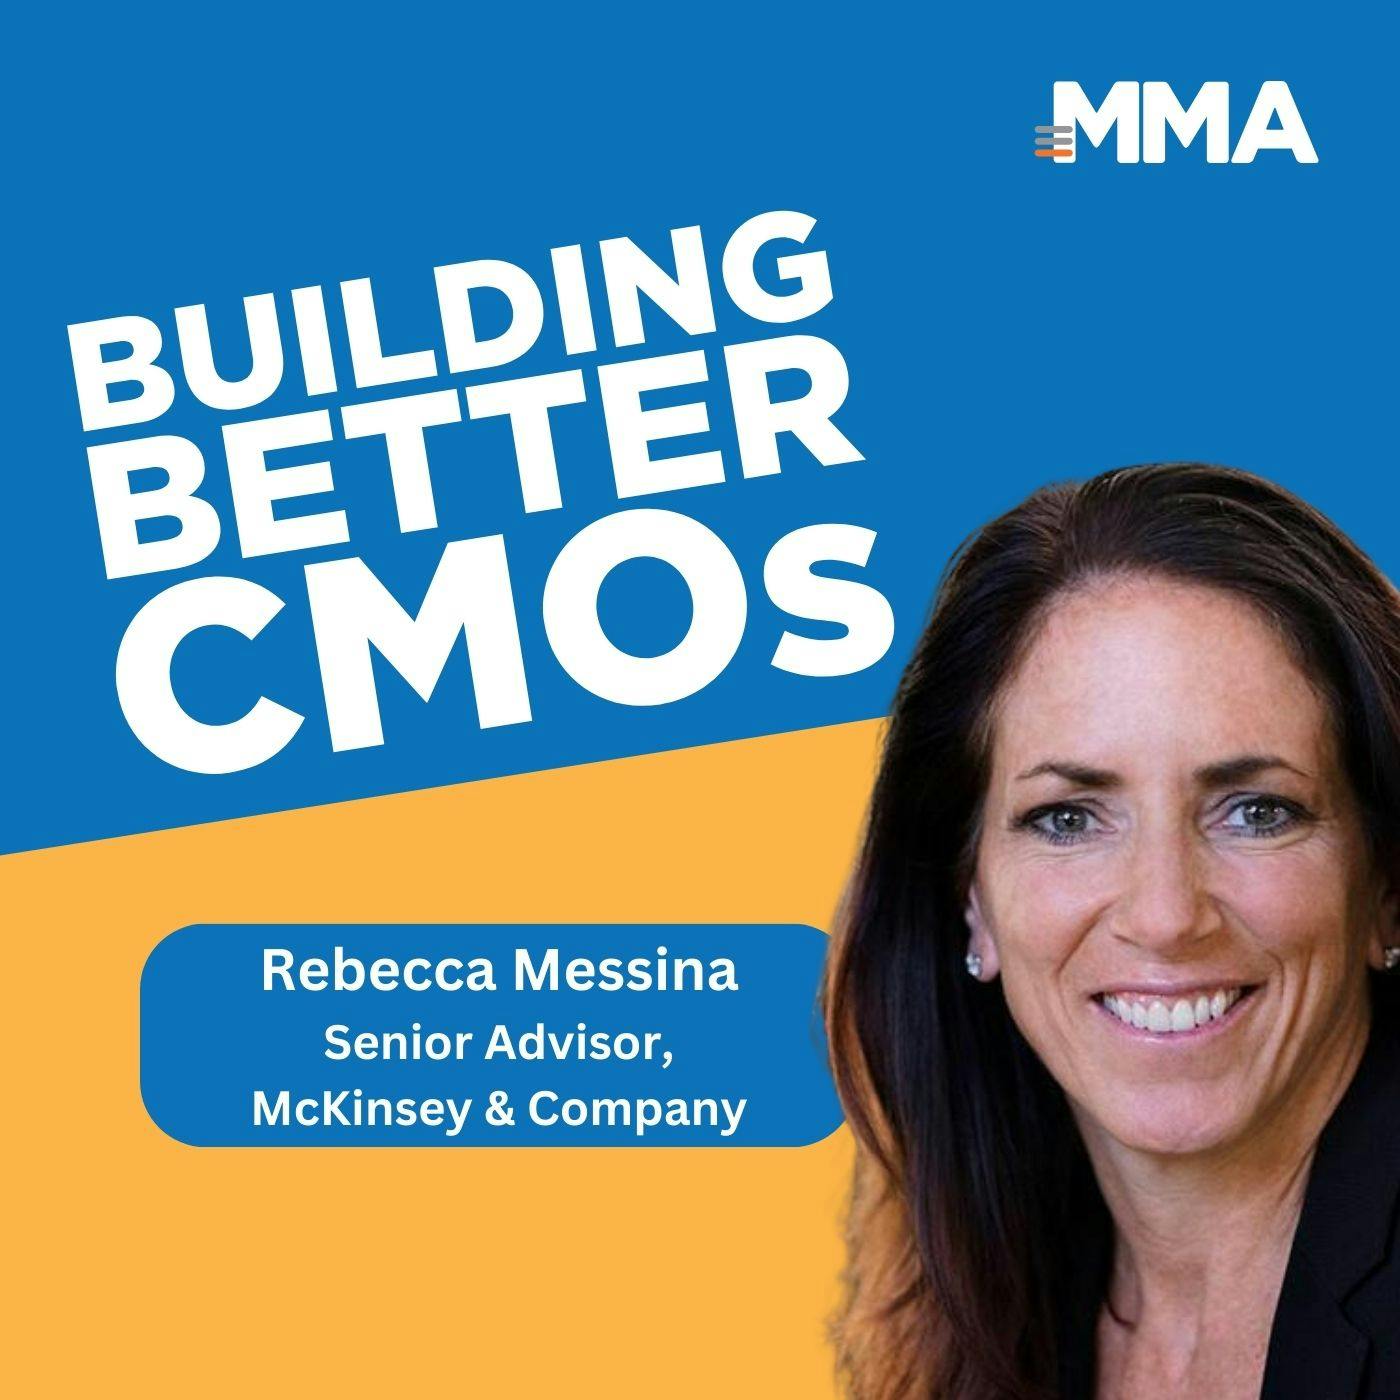 Rebecca Messina, Former Global CMO of Uber: Value Creation Mindset